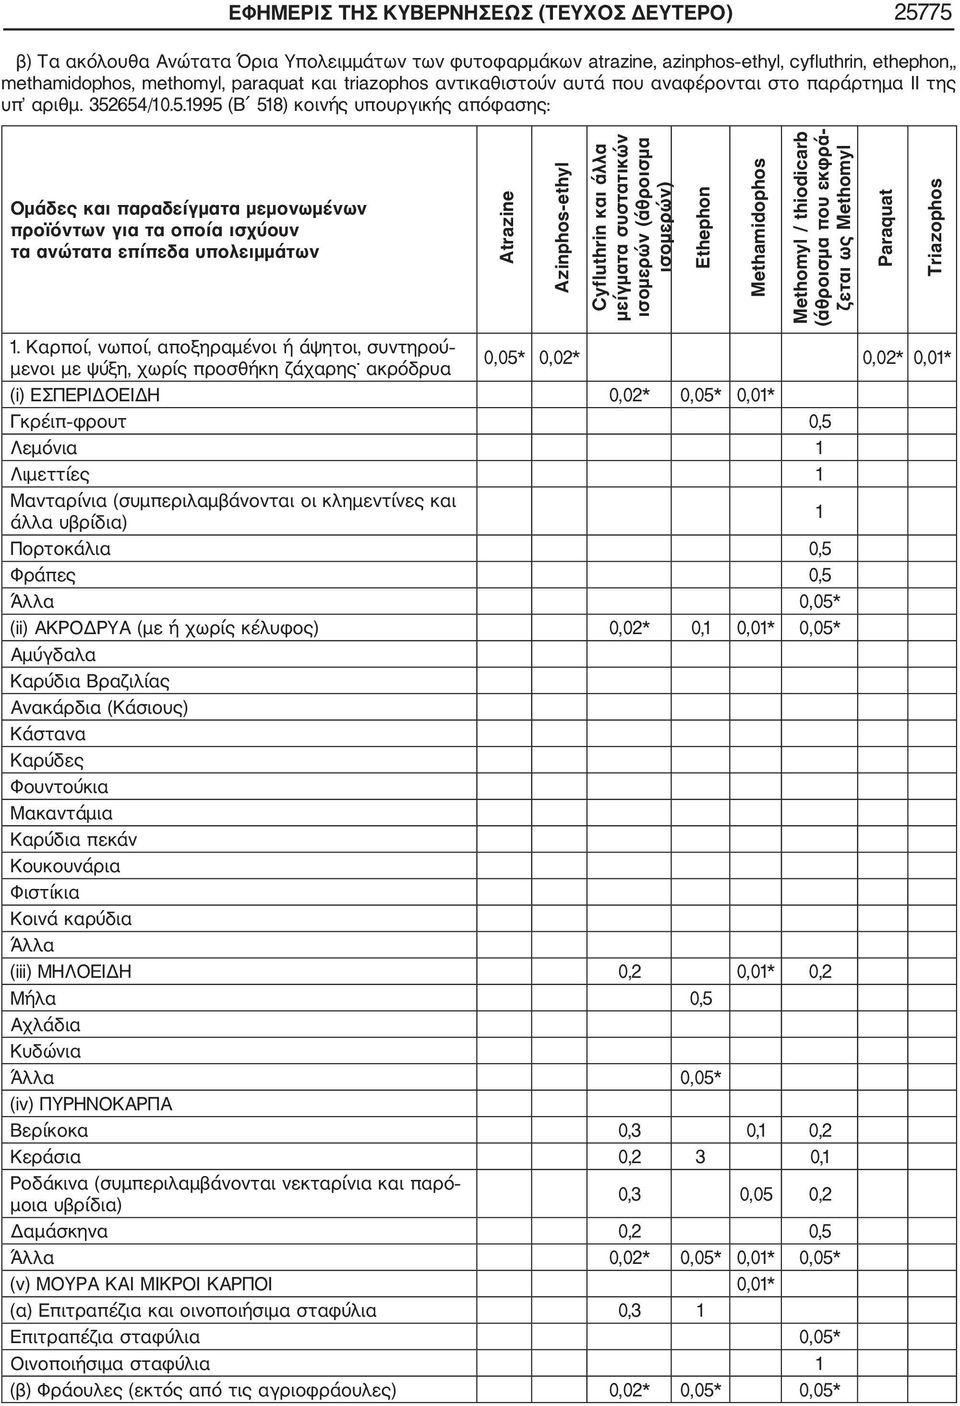 654/10.5.1995 (Β 518) κοινής υπουργικής απόφασης: Ομάδες και παραδείγματα μεμονωμένων προϊόντων για τα οποία ισχύουν τα ανώτατα επίπεδα υπολειμμάτων Atrazine Cyfluthrin και άλλα μείγματα συστατικών